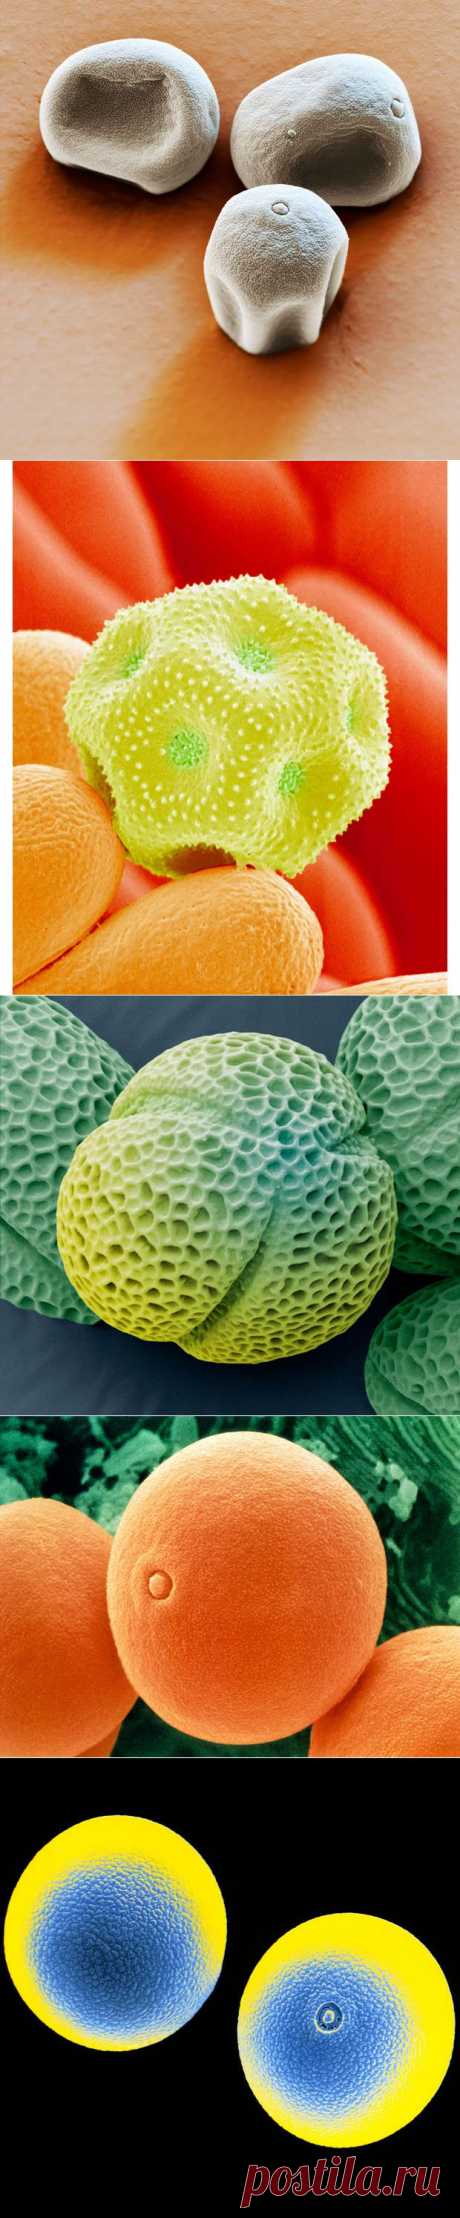 (+1) тема - Частицы пыли и пыльцы под микроскопом | НАУКА И ЖИЗНЬ